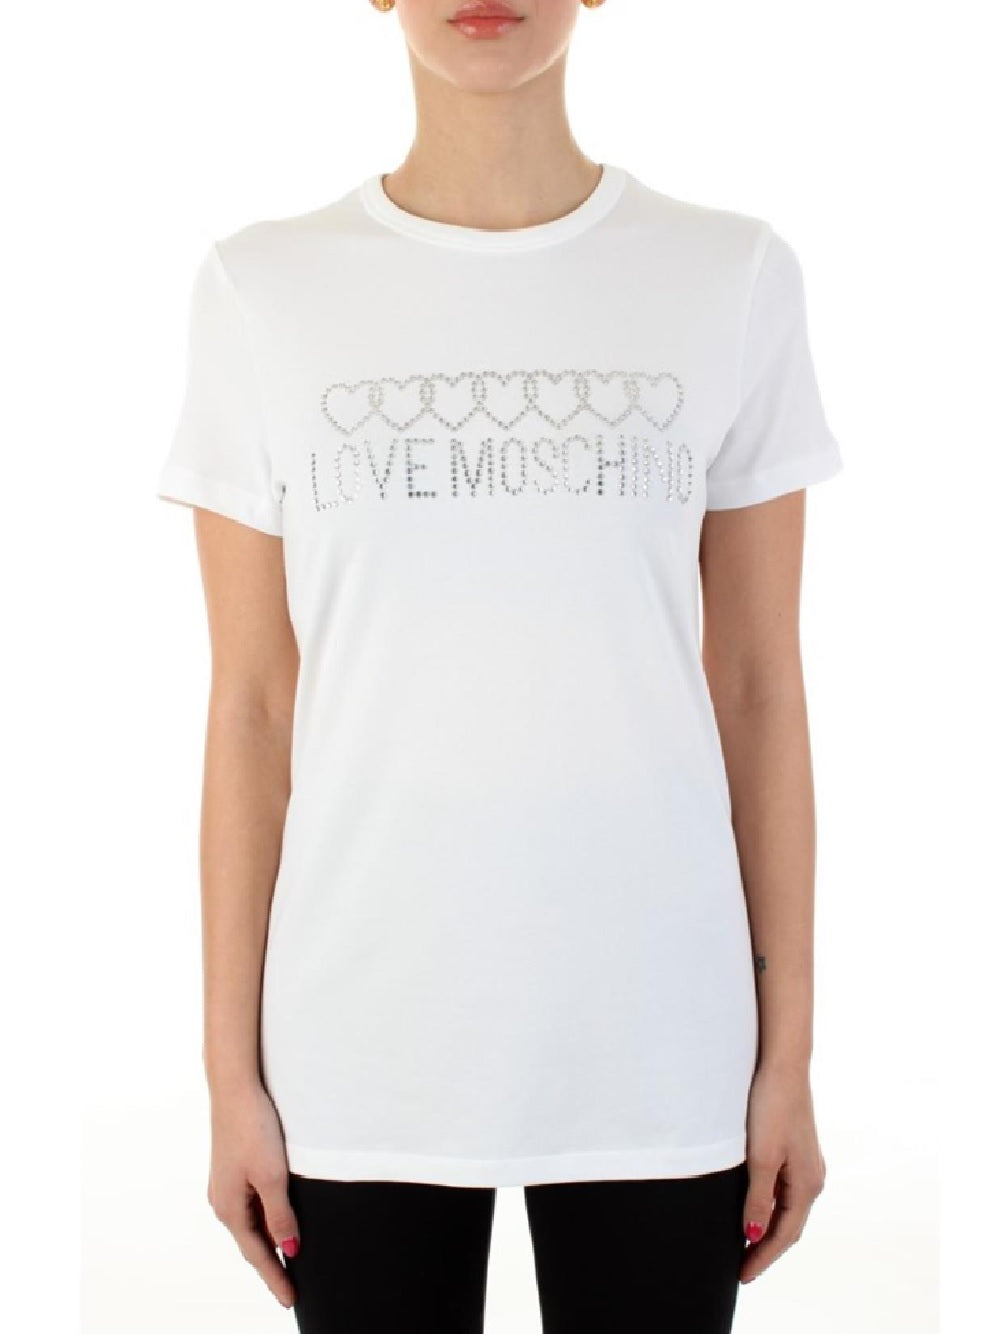 T-Shirt Love Moschino realizzata interamente in cotone, per darti un capo morbido e comodo. La T-Shirt presenta dei brillantini applicati a formare il lettering del brand e dei cuori incrociati